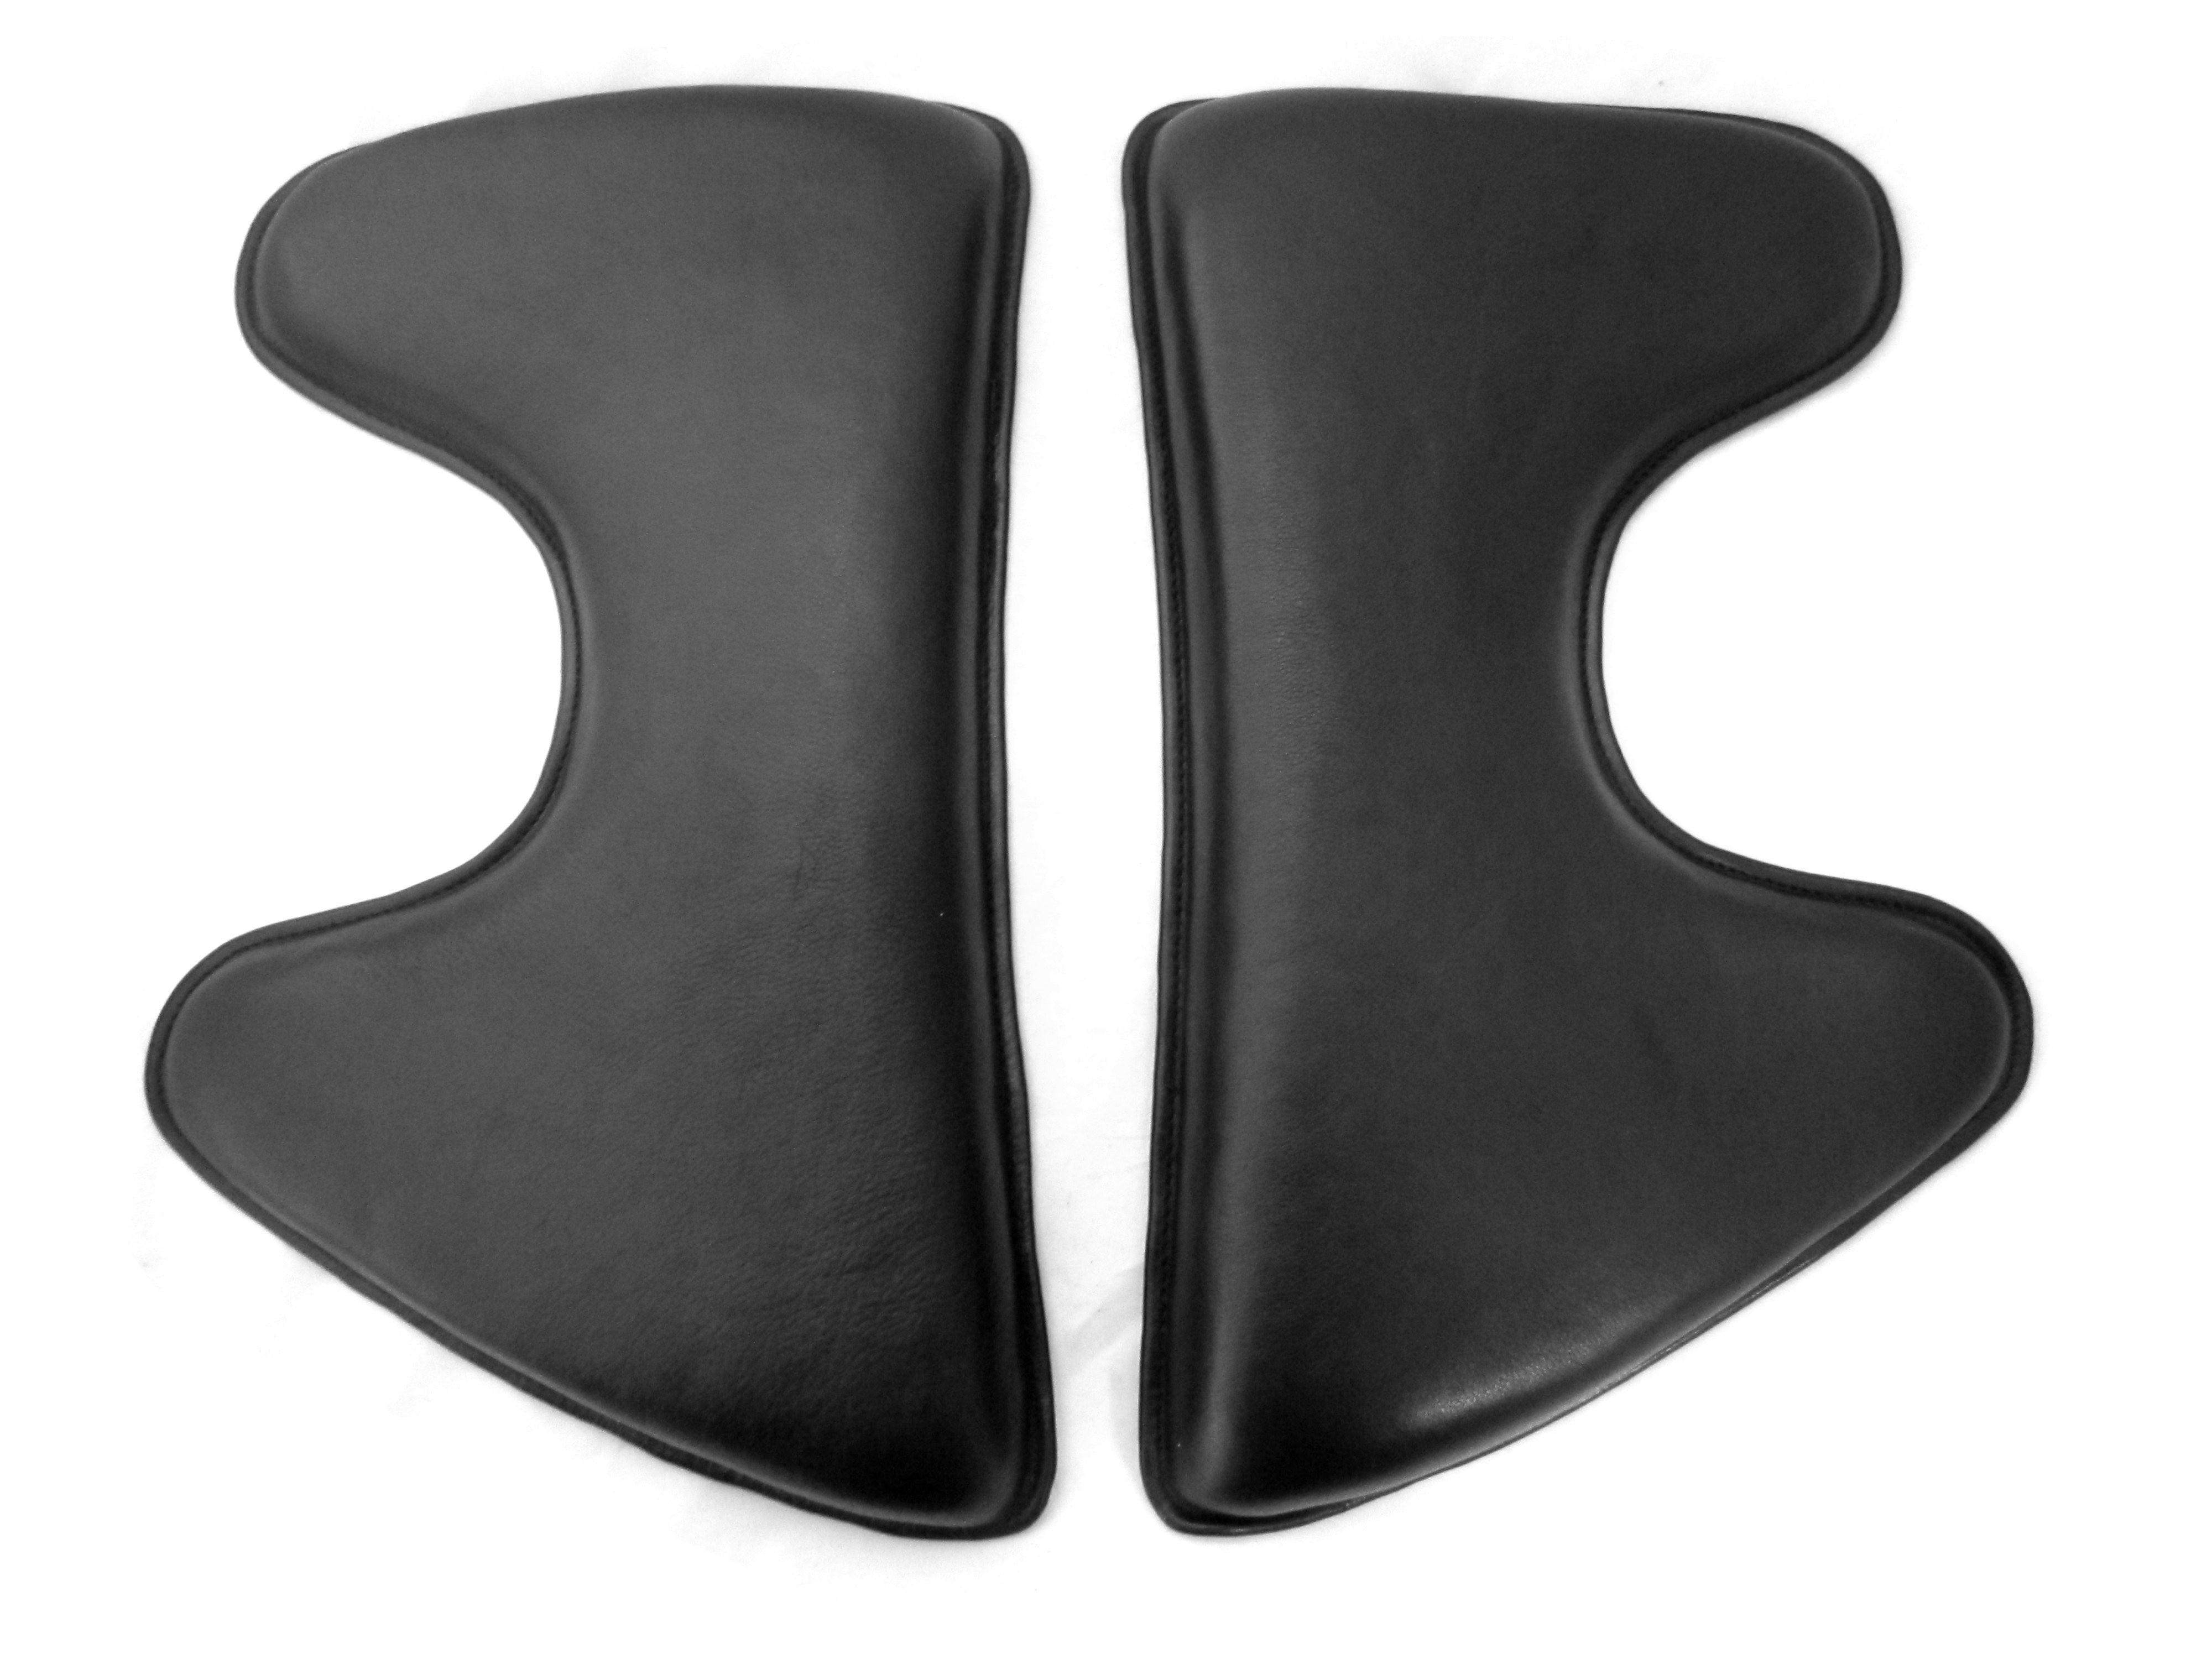 3-4-5 cm high wedge shape Velcro cushion Spanish shape; Saddle cushion/Velcro panels